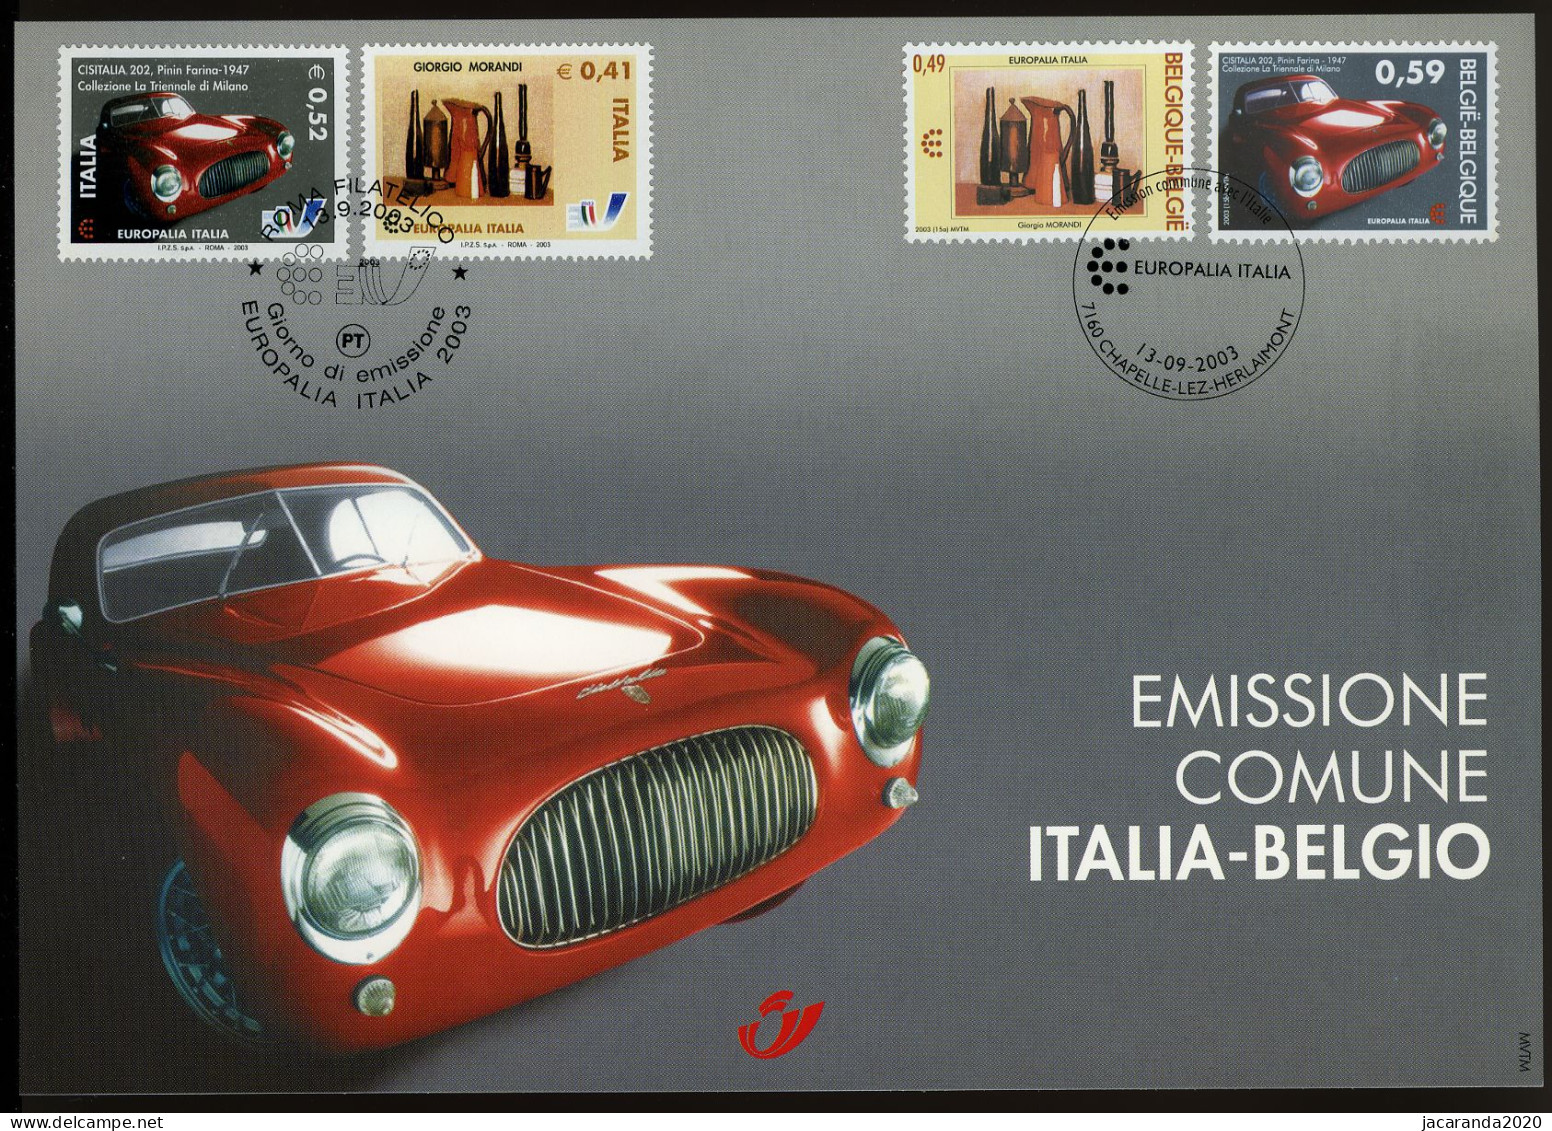 België 3205 HK - Europalia Italië - Giorgio Morandi - Pinin Farina - Gem. Uitgifte Met Italië - 2003 - Erinnerungskarten – Gemeinschaftsausgaben [HK]